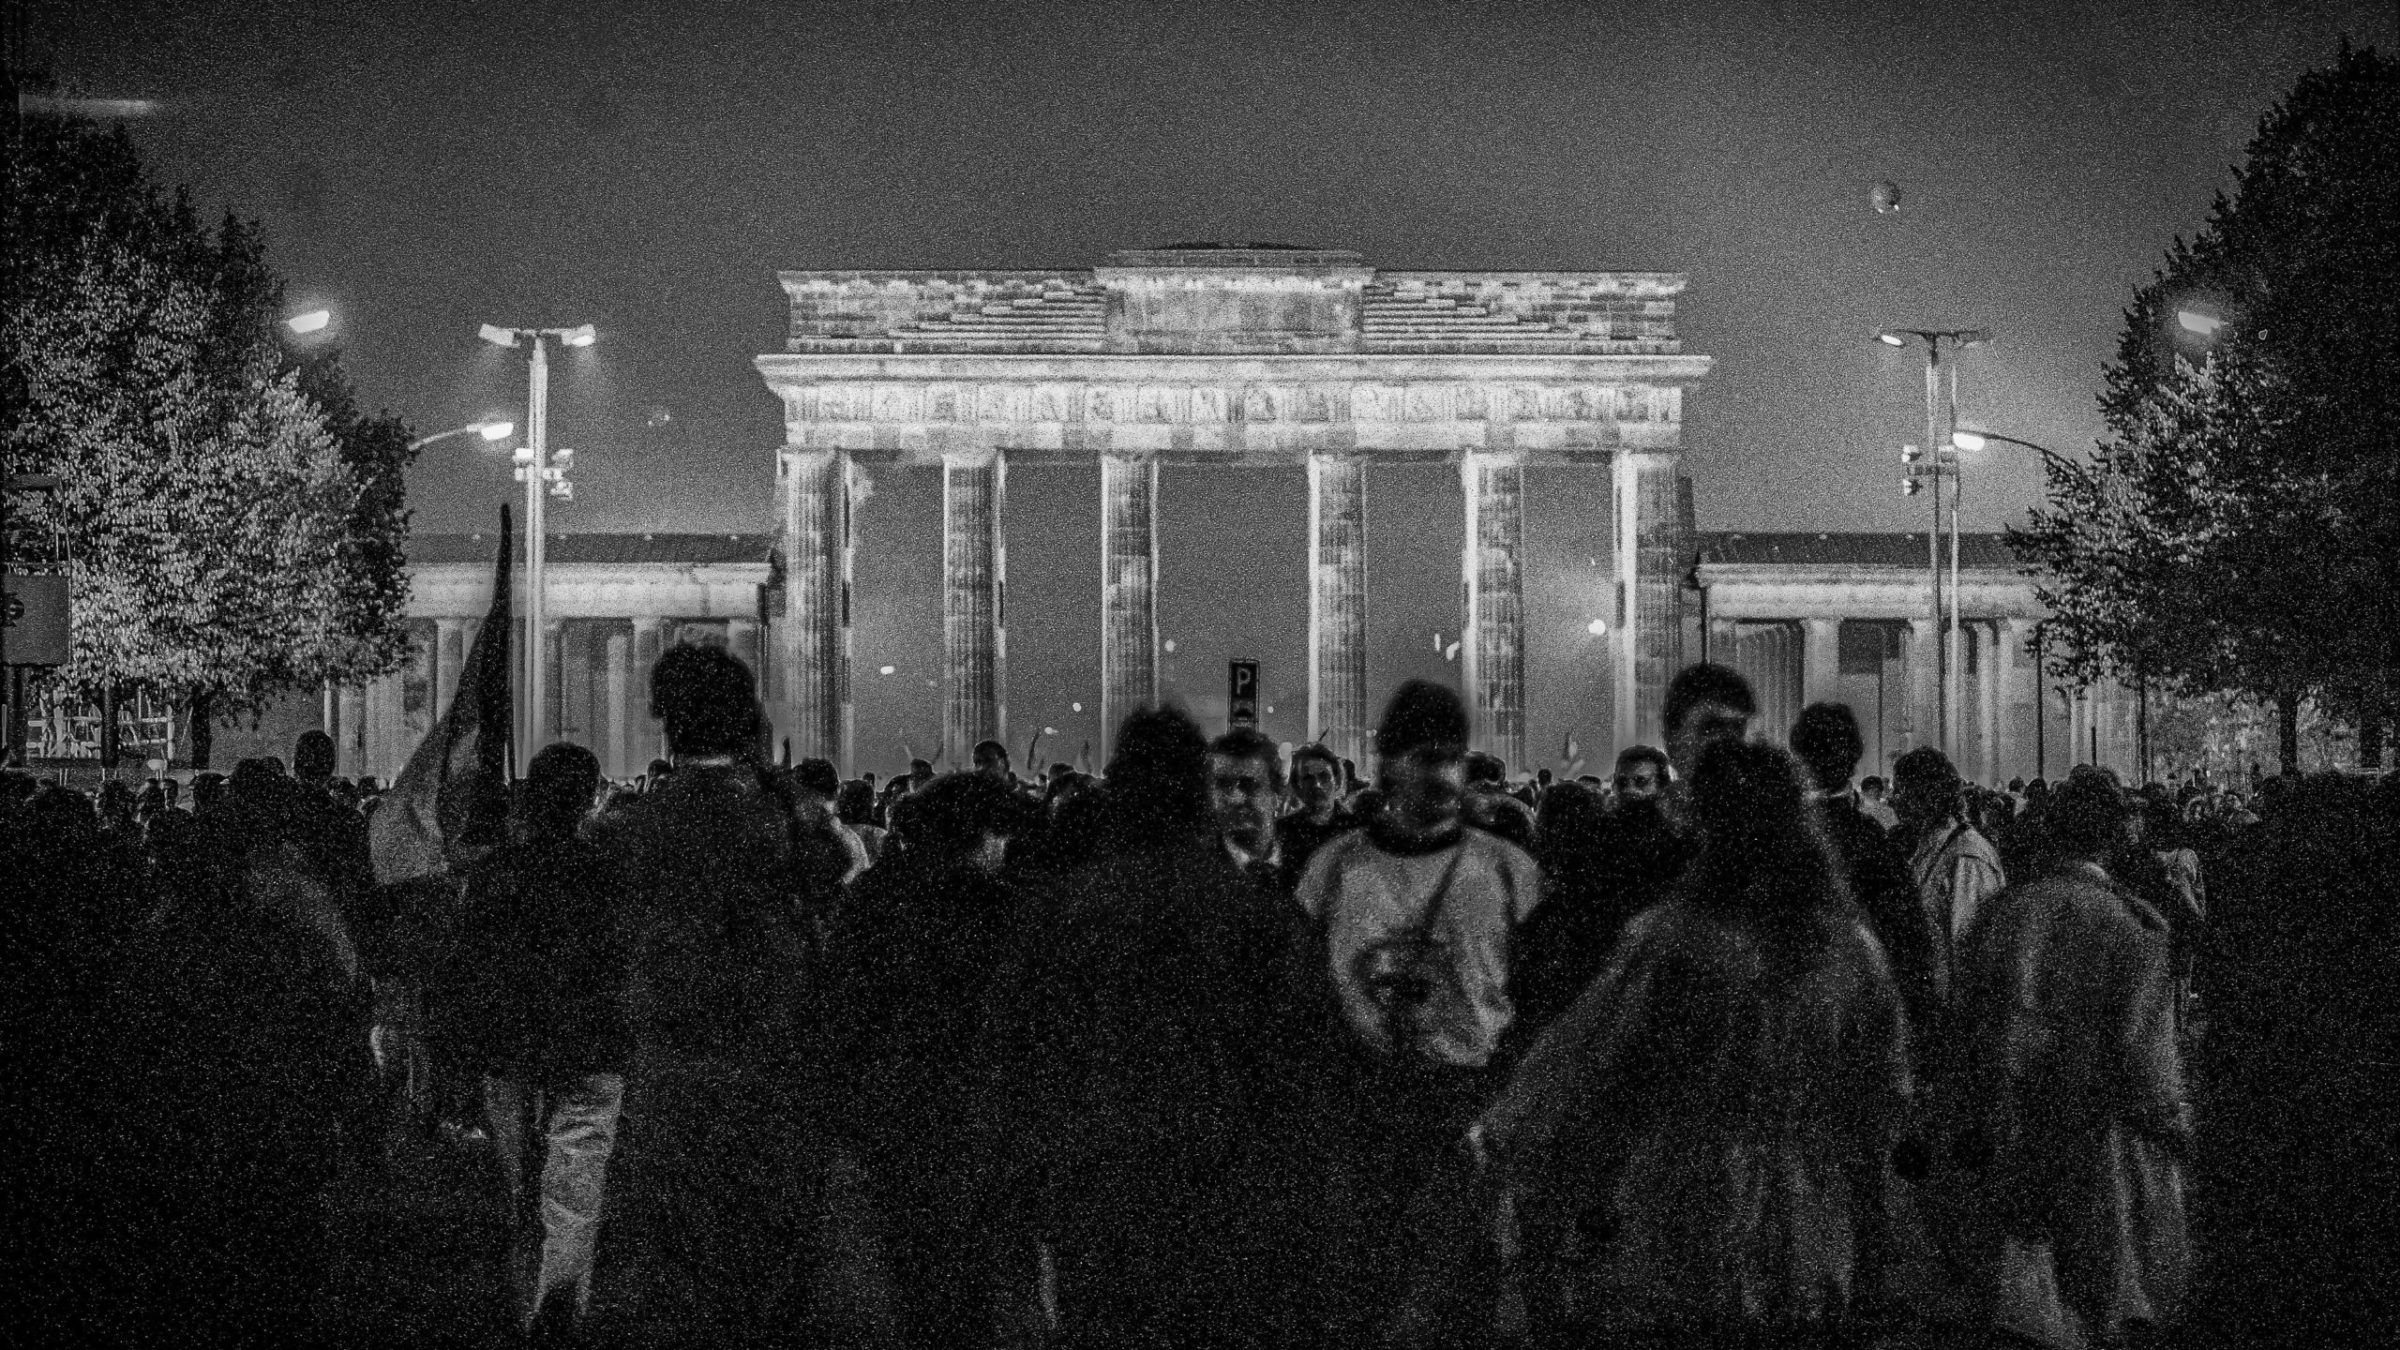 Das Brandenburger Tor nach dem Fall der Mauer – Menschen feiern die Wiedervereinigung Deutschlands